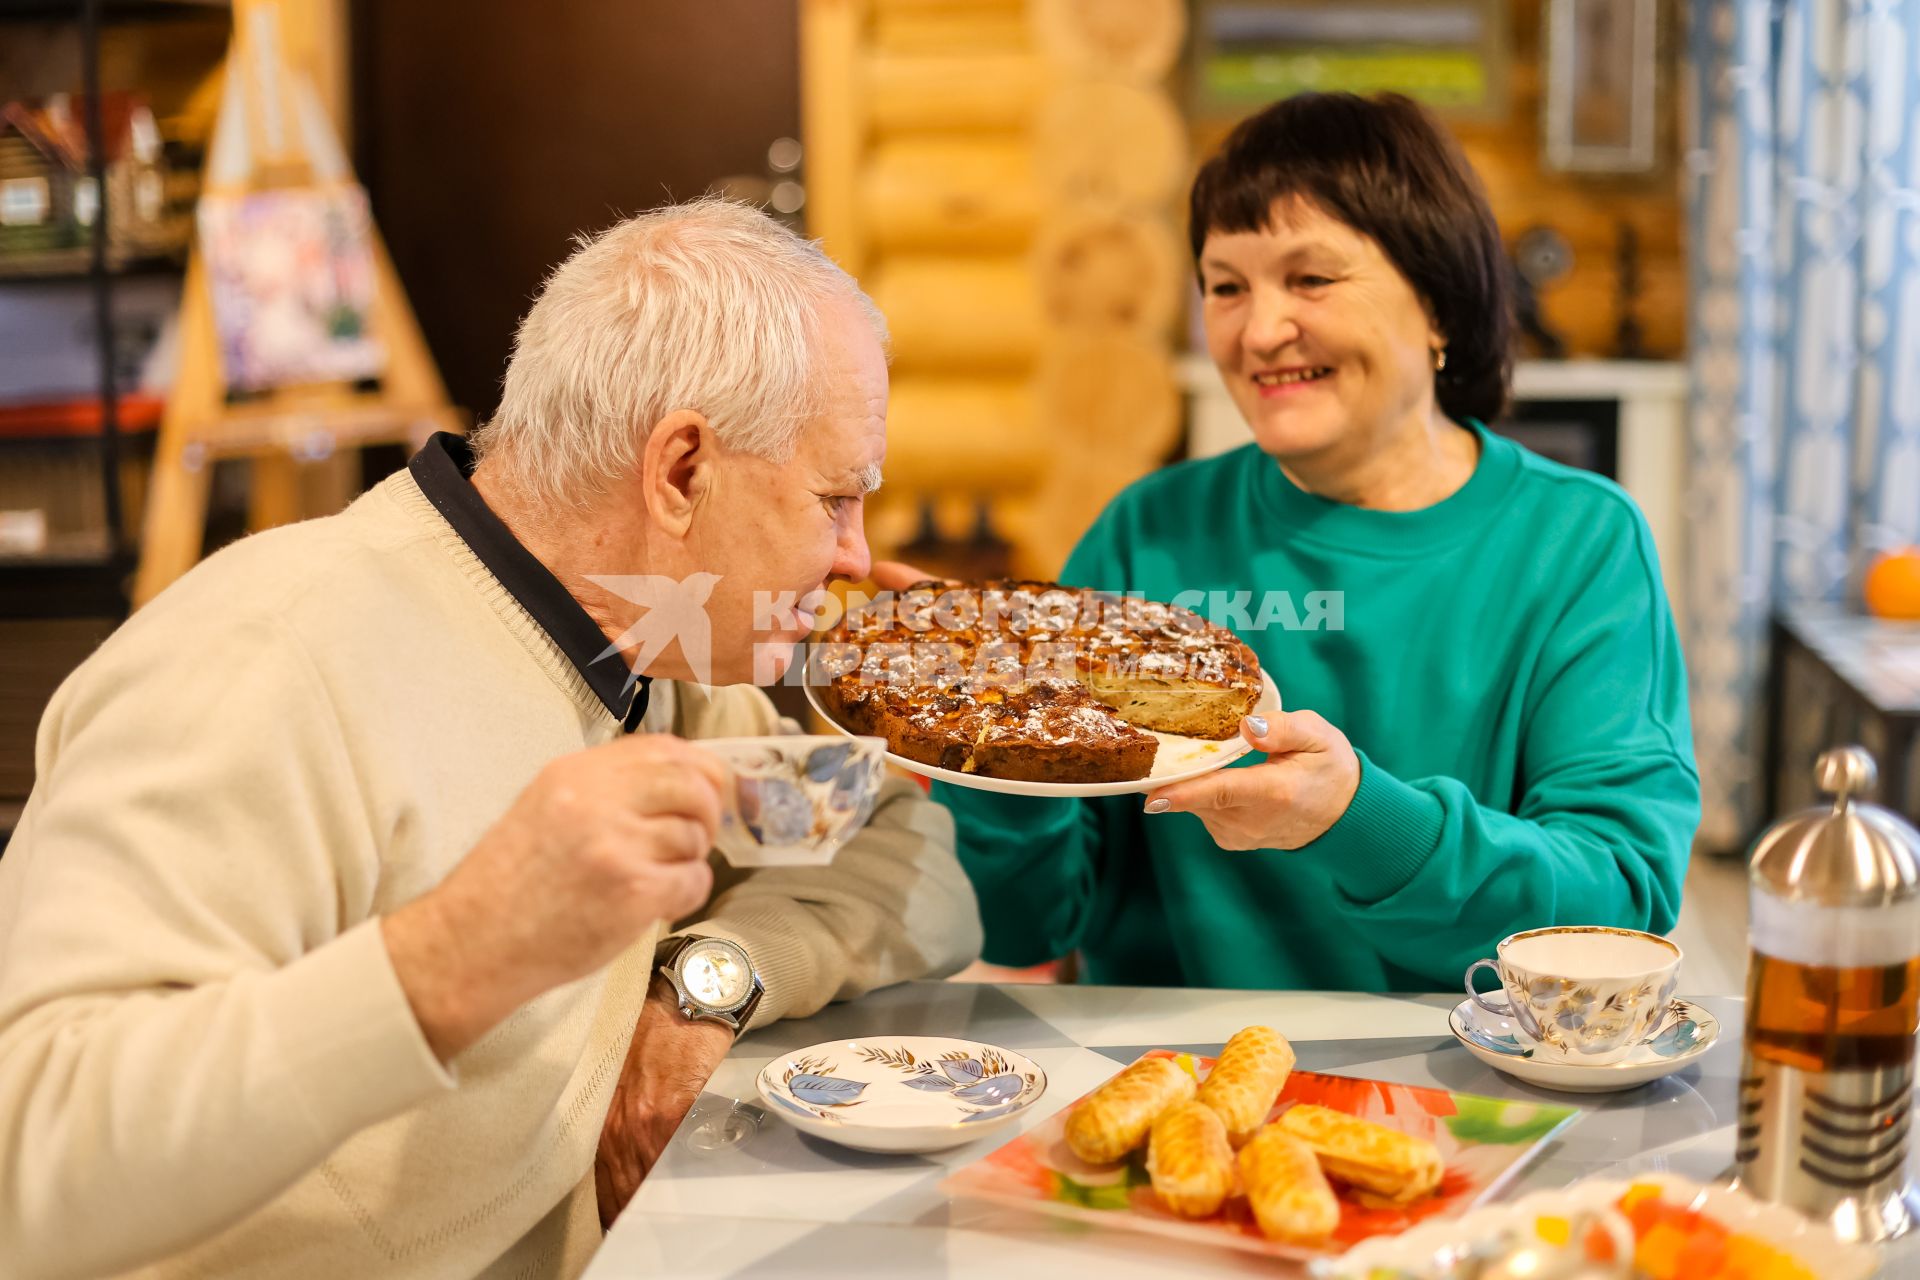 Красноярск. Пожилая пара пьет чай в своем загородном доме.